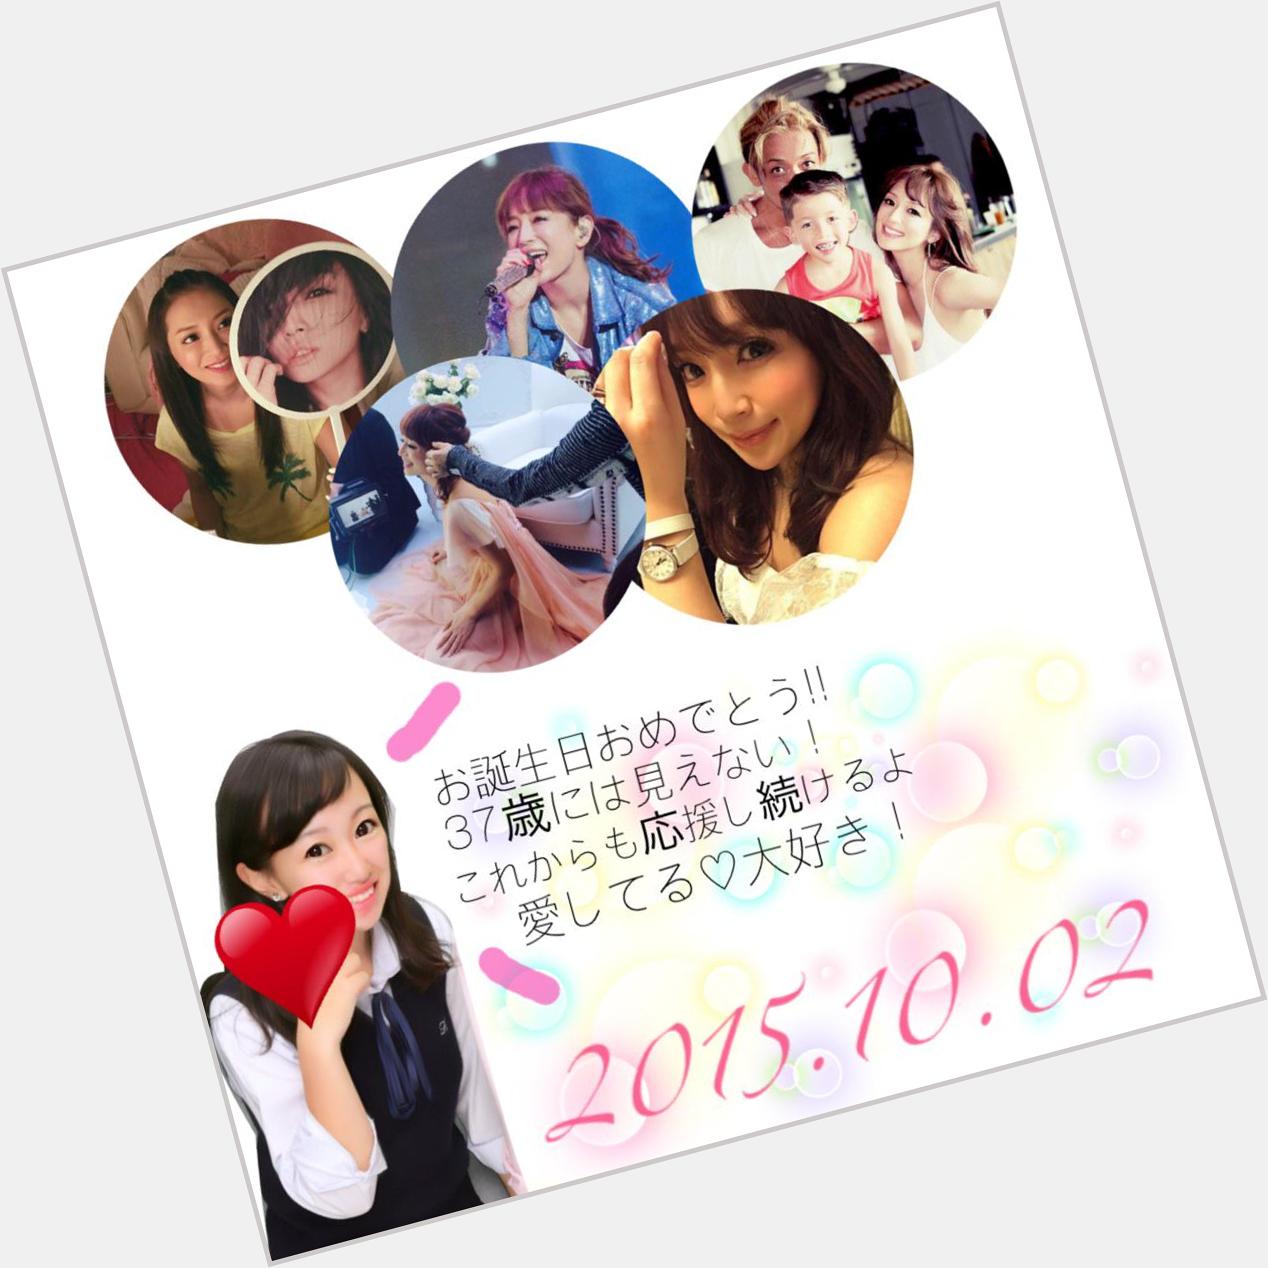 Happy Birthday to Ayumi Hamasaki 